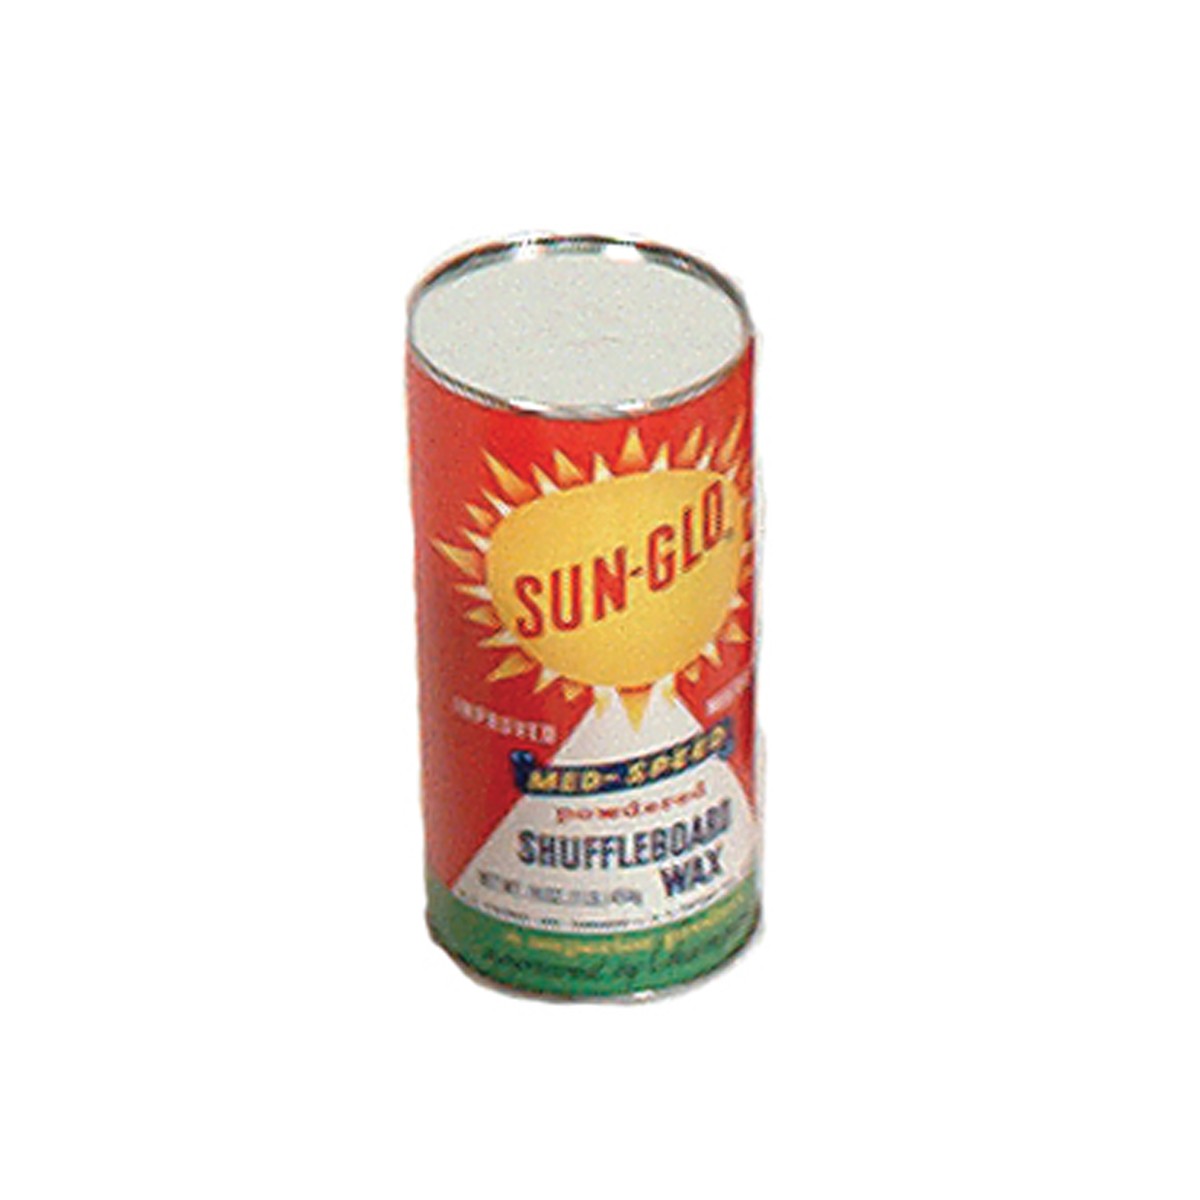 22-115 Sun-glo Speed 6 Shuffleboard Powder